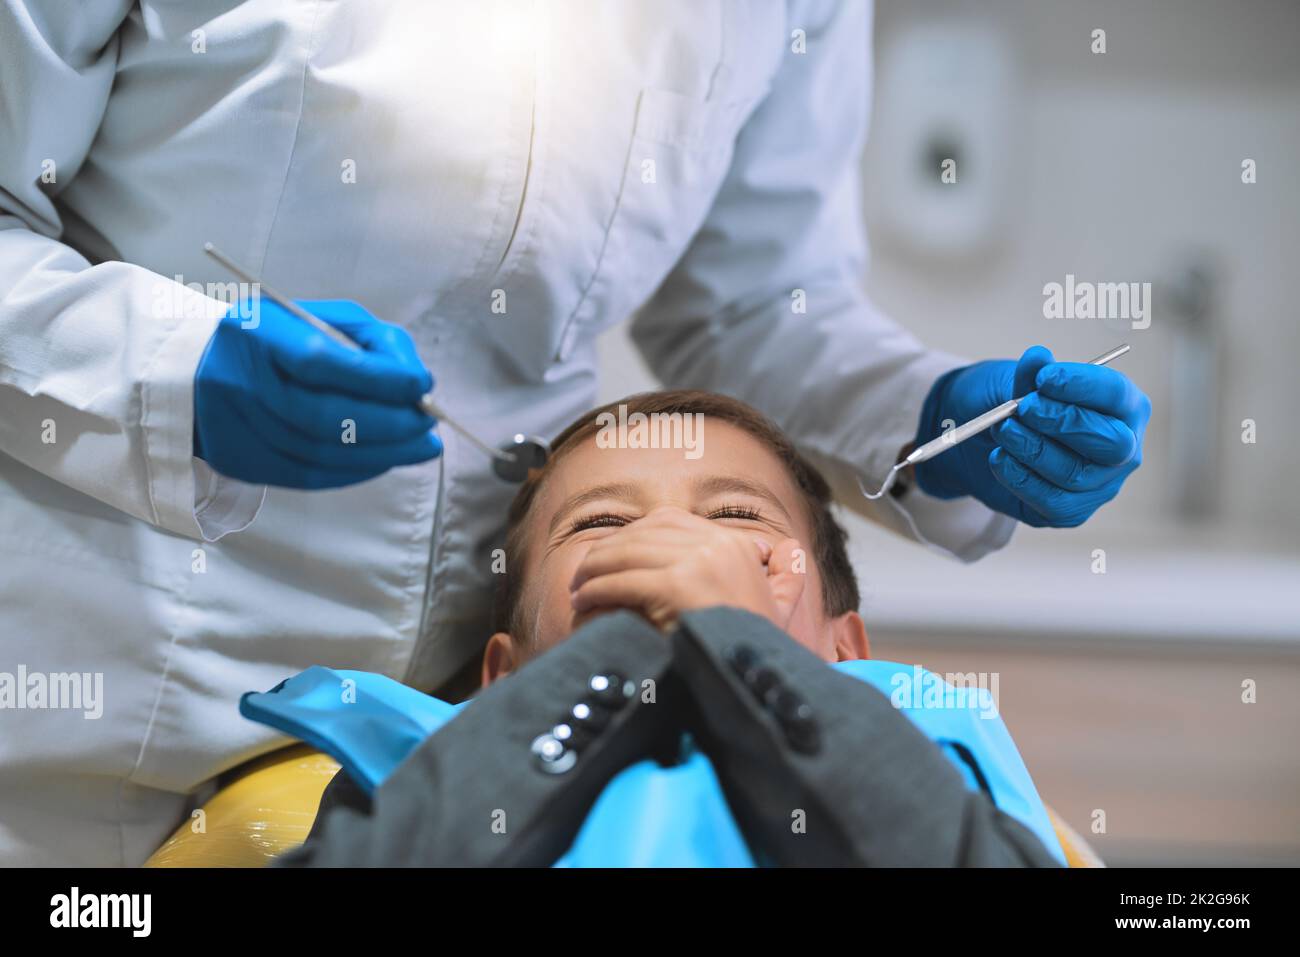 Im a spaventato per aprire la mia bocca. Colpo di un ragazzino spaventato sdraiato su una sedia da dentista e tiene chiusa la bocca per impedire al dentista di lavorargli. Foto Stock